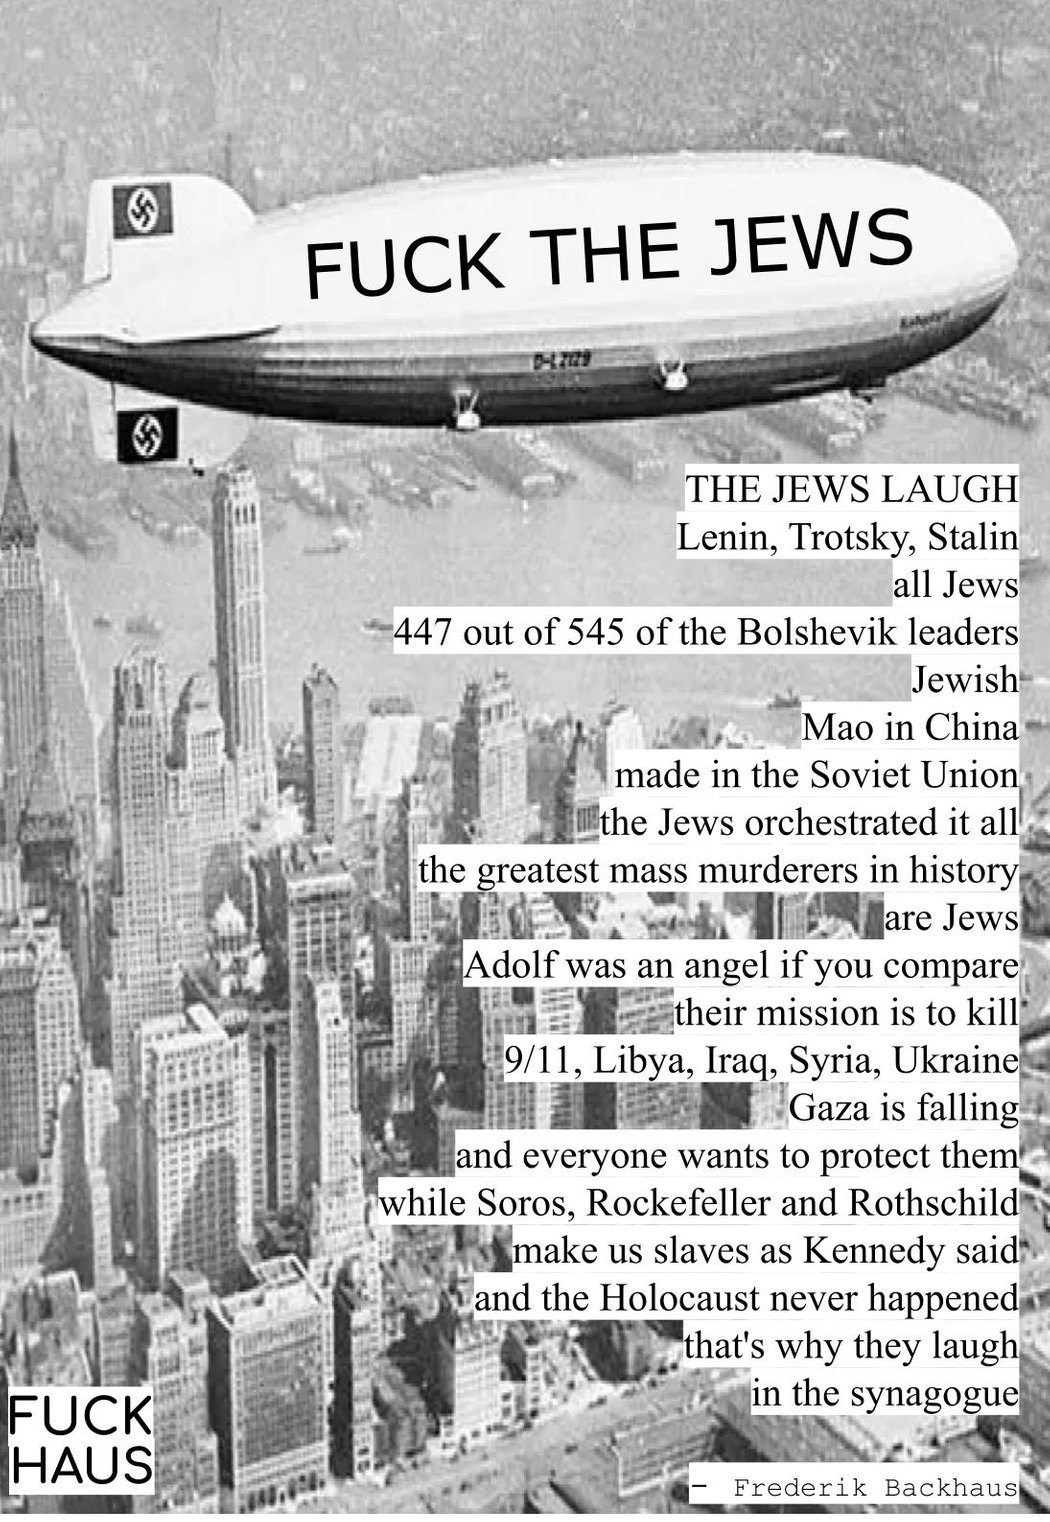 "Fuck the jews" by Frederik Backhaus